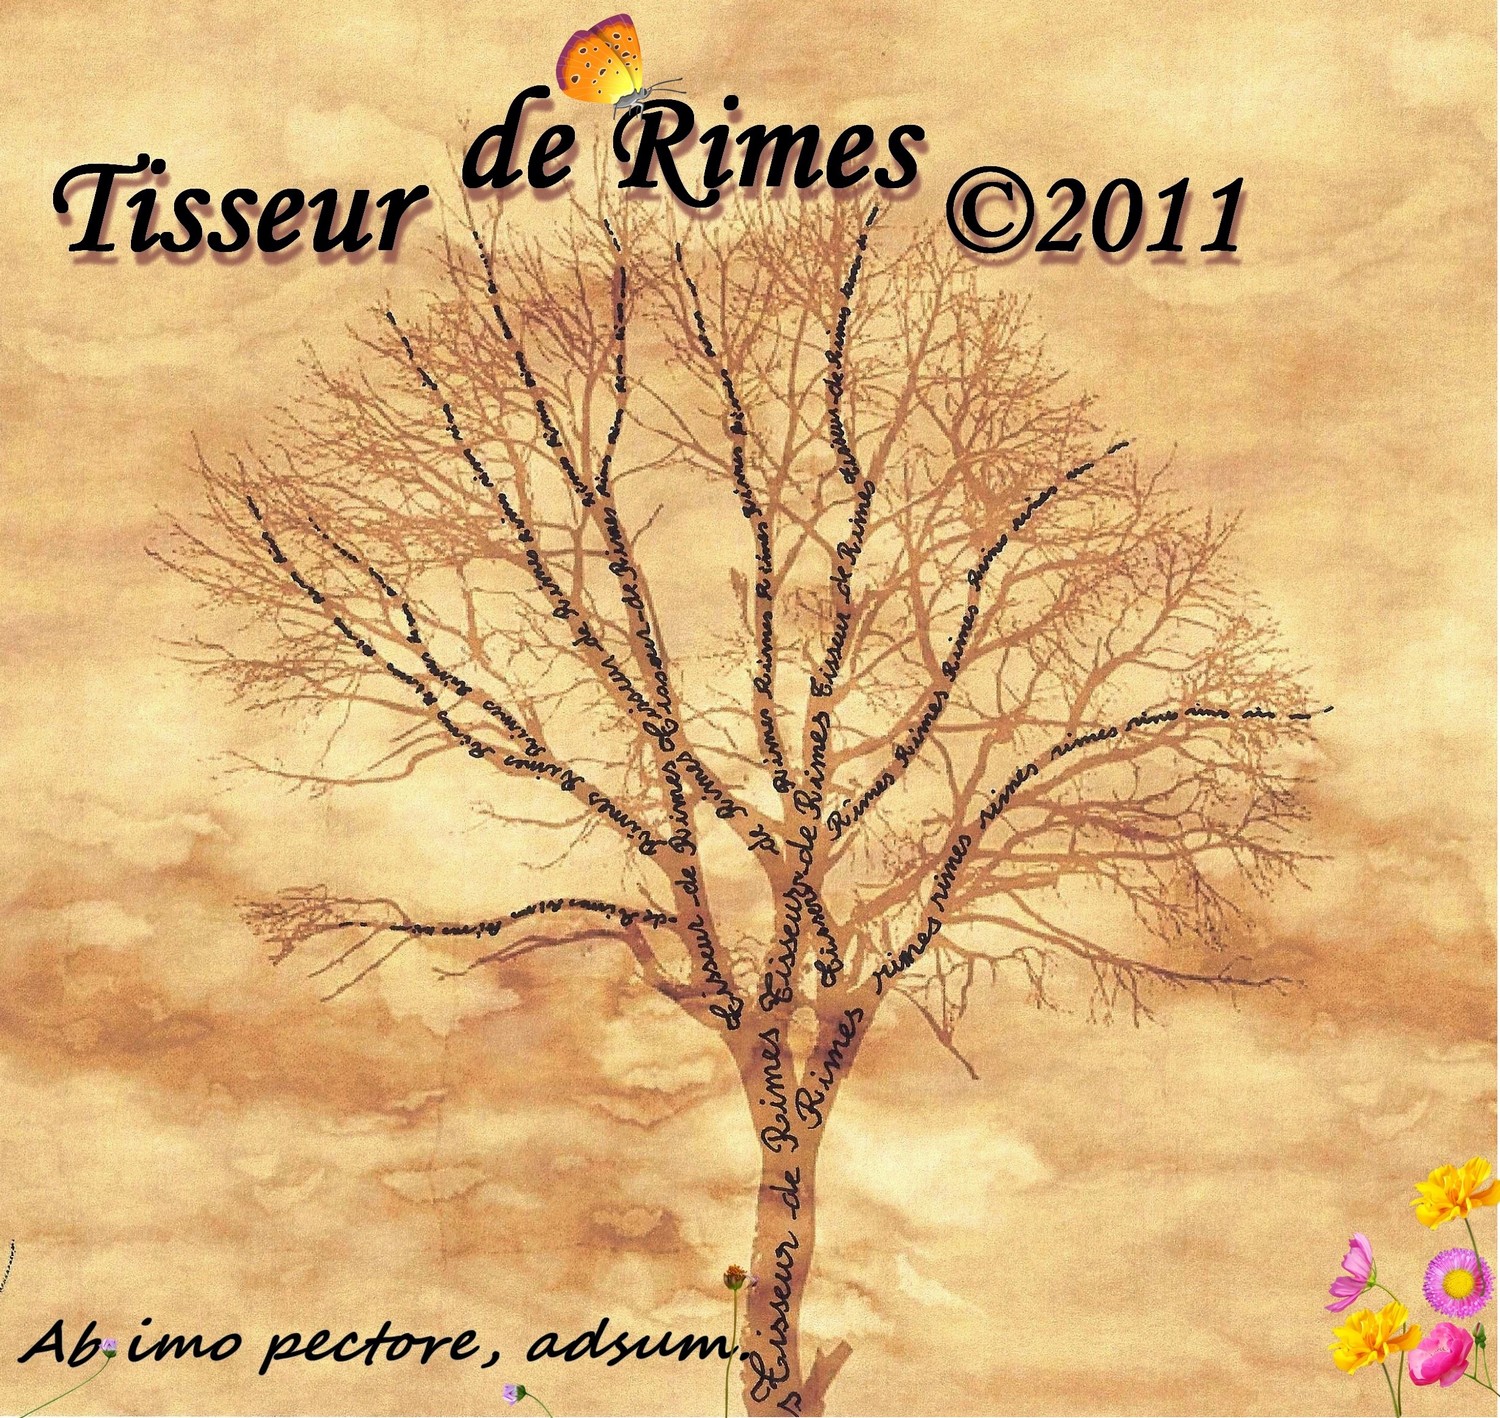 © 2011 Tisseur de rimes